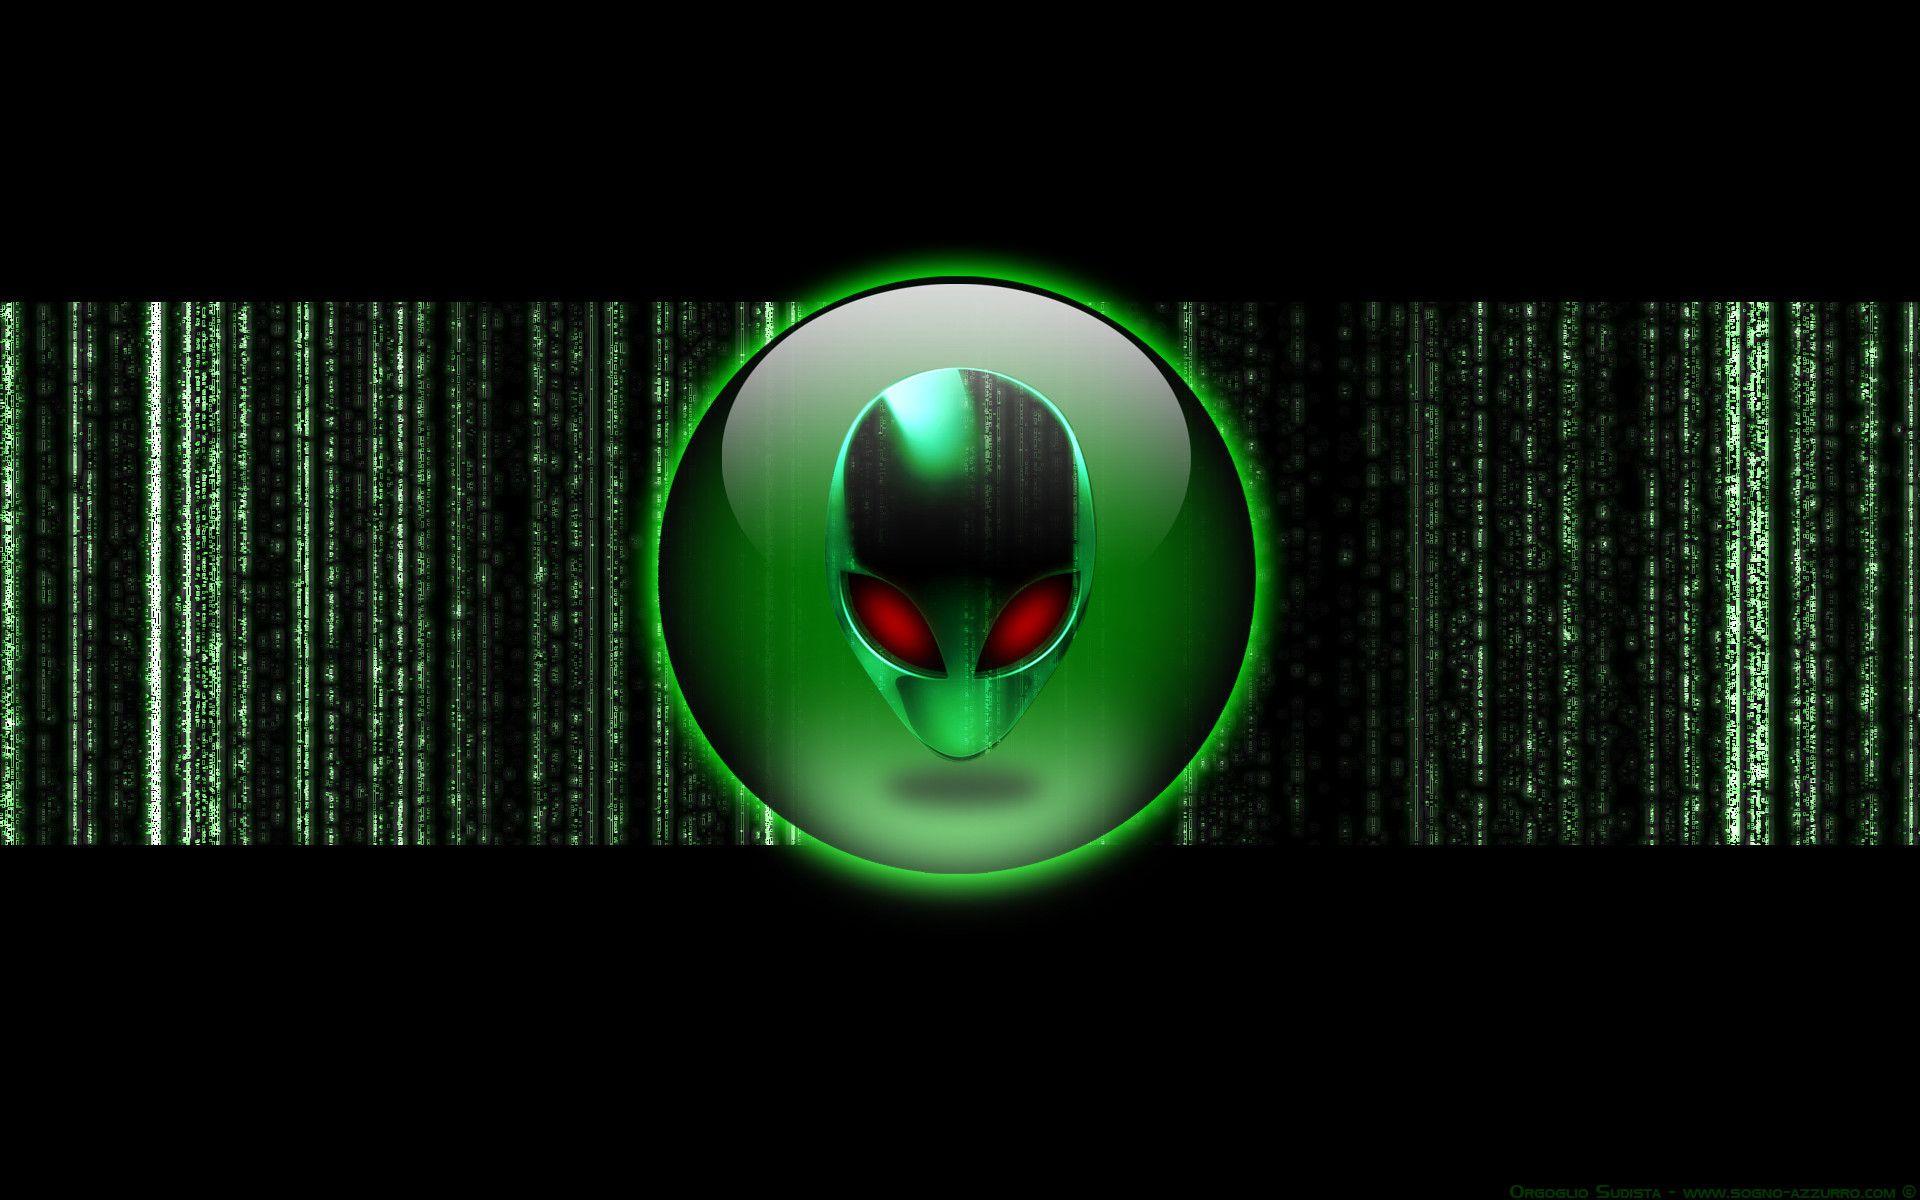 Green Alienware Wallpapers - Top Free Green Alienware Backgrounds ...